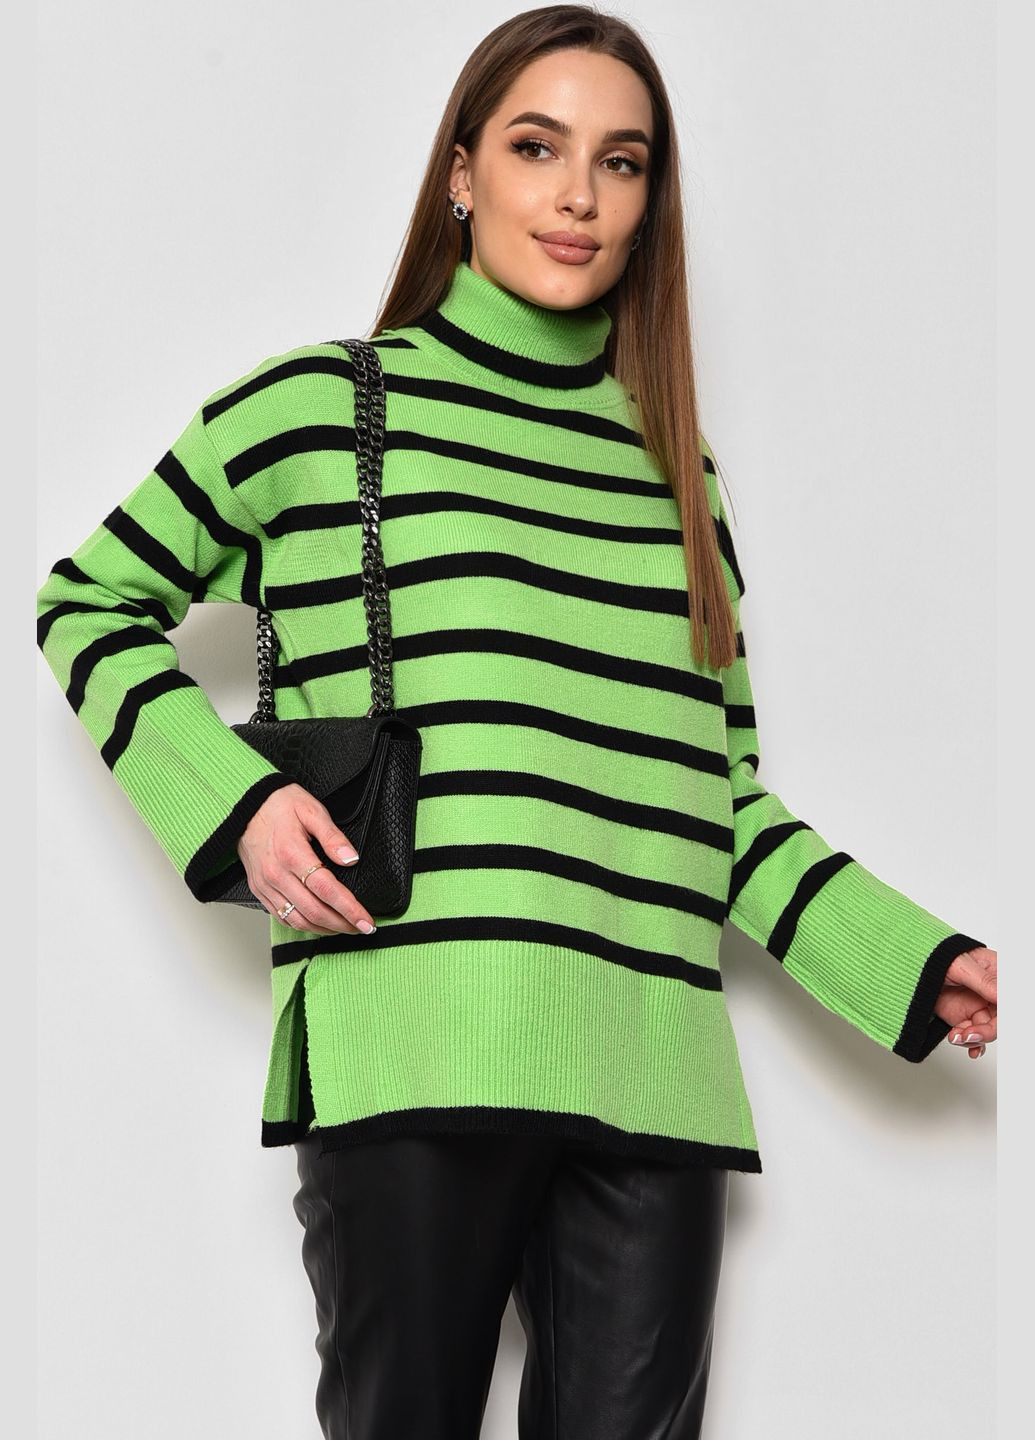 Салатовый зимний свитер женский полубатальный в полоску салатового цвета пуловер Let's Shop